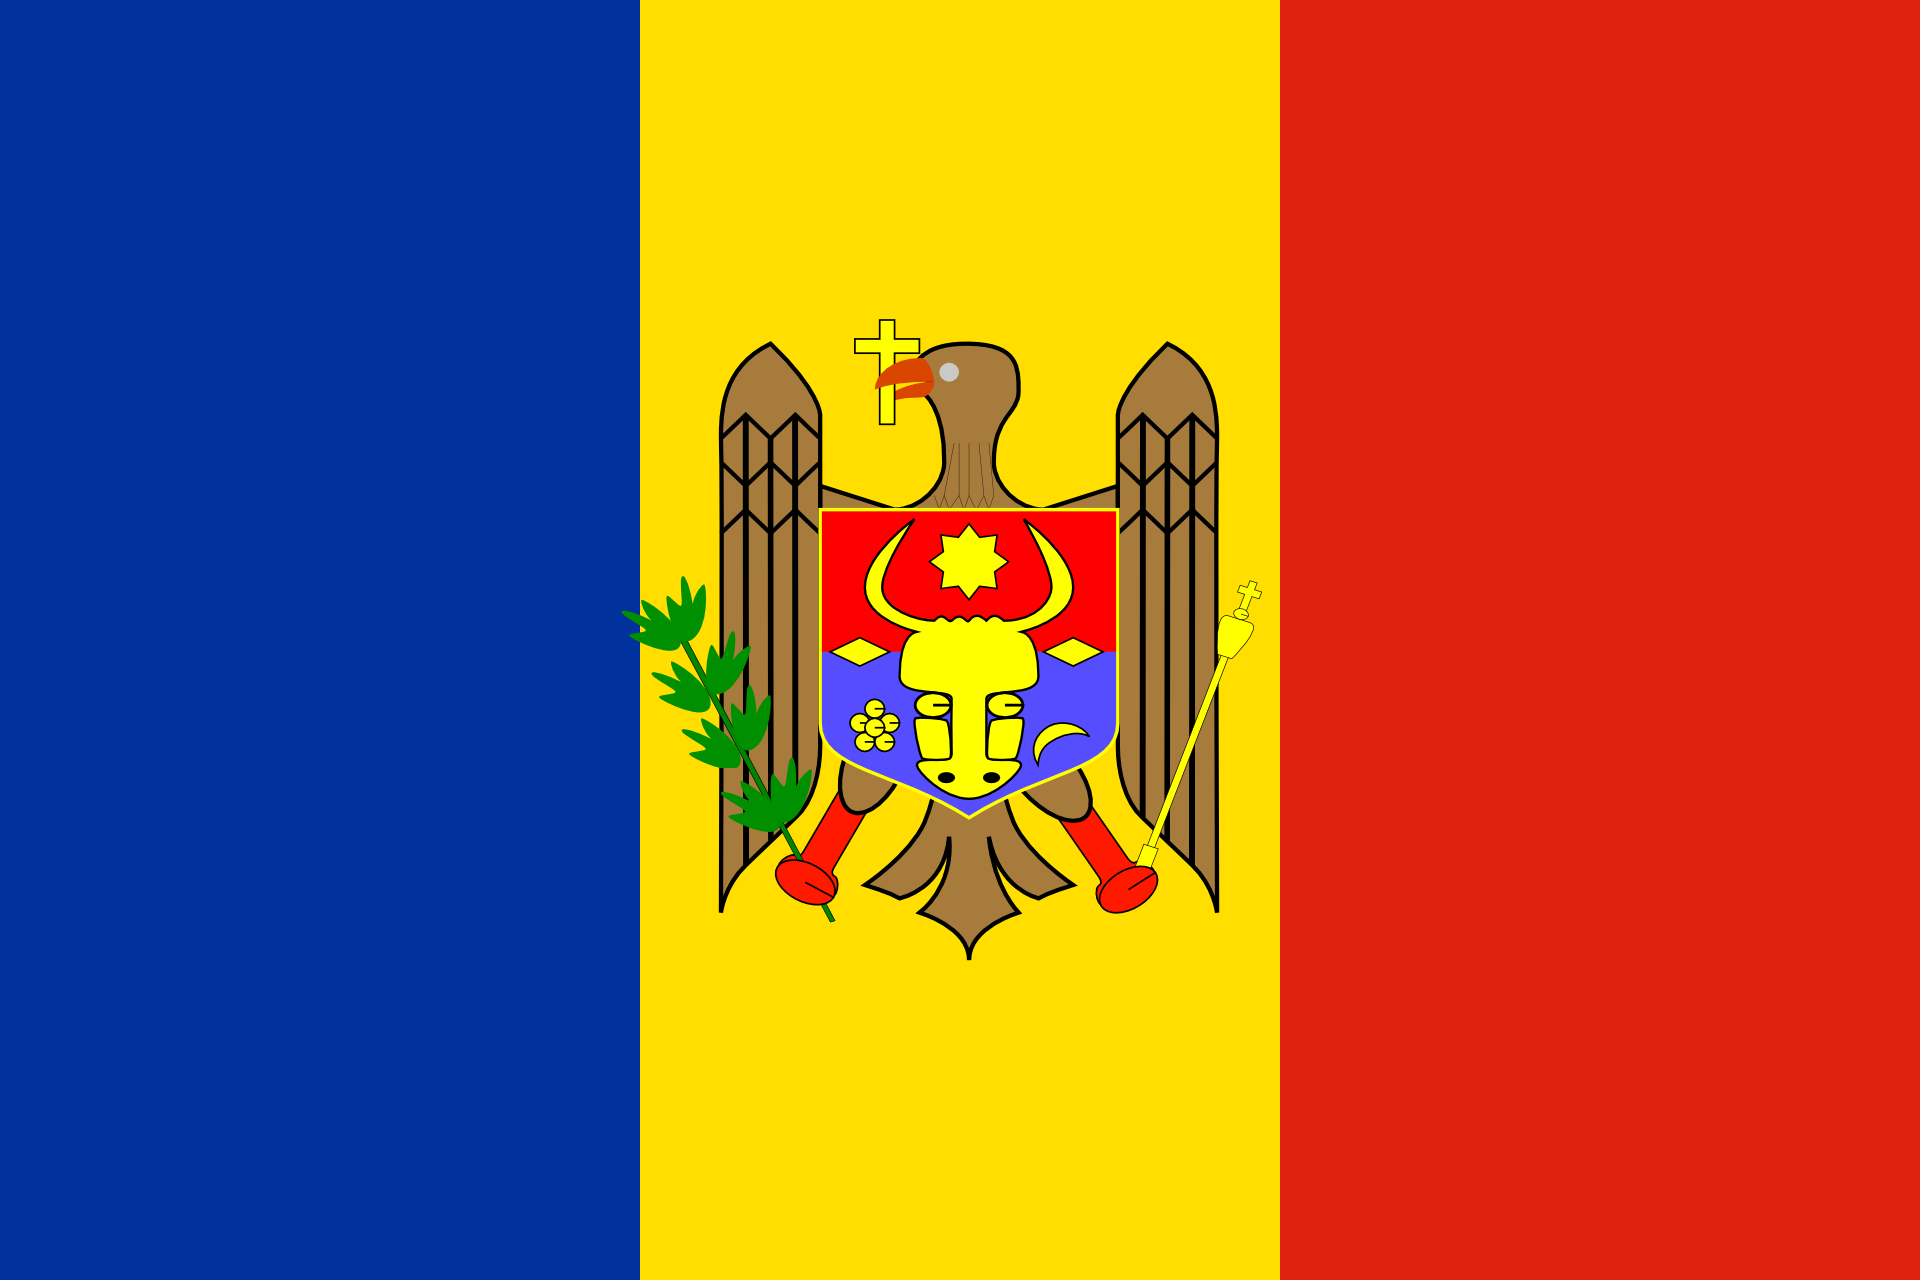 Государство молдова. Флаг Республики Молдавии. Прапор Молдови. Флаг Молдовы хорошего качества. Флаг Кишинева.